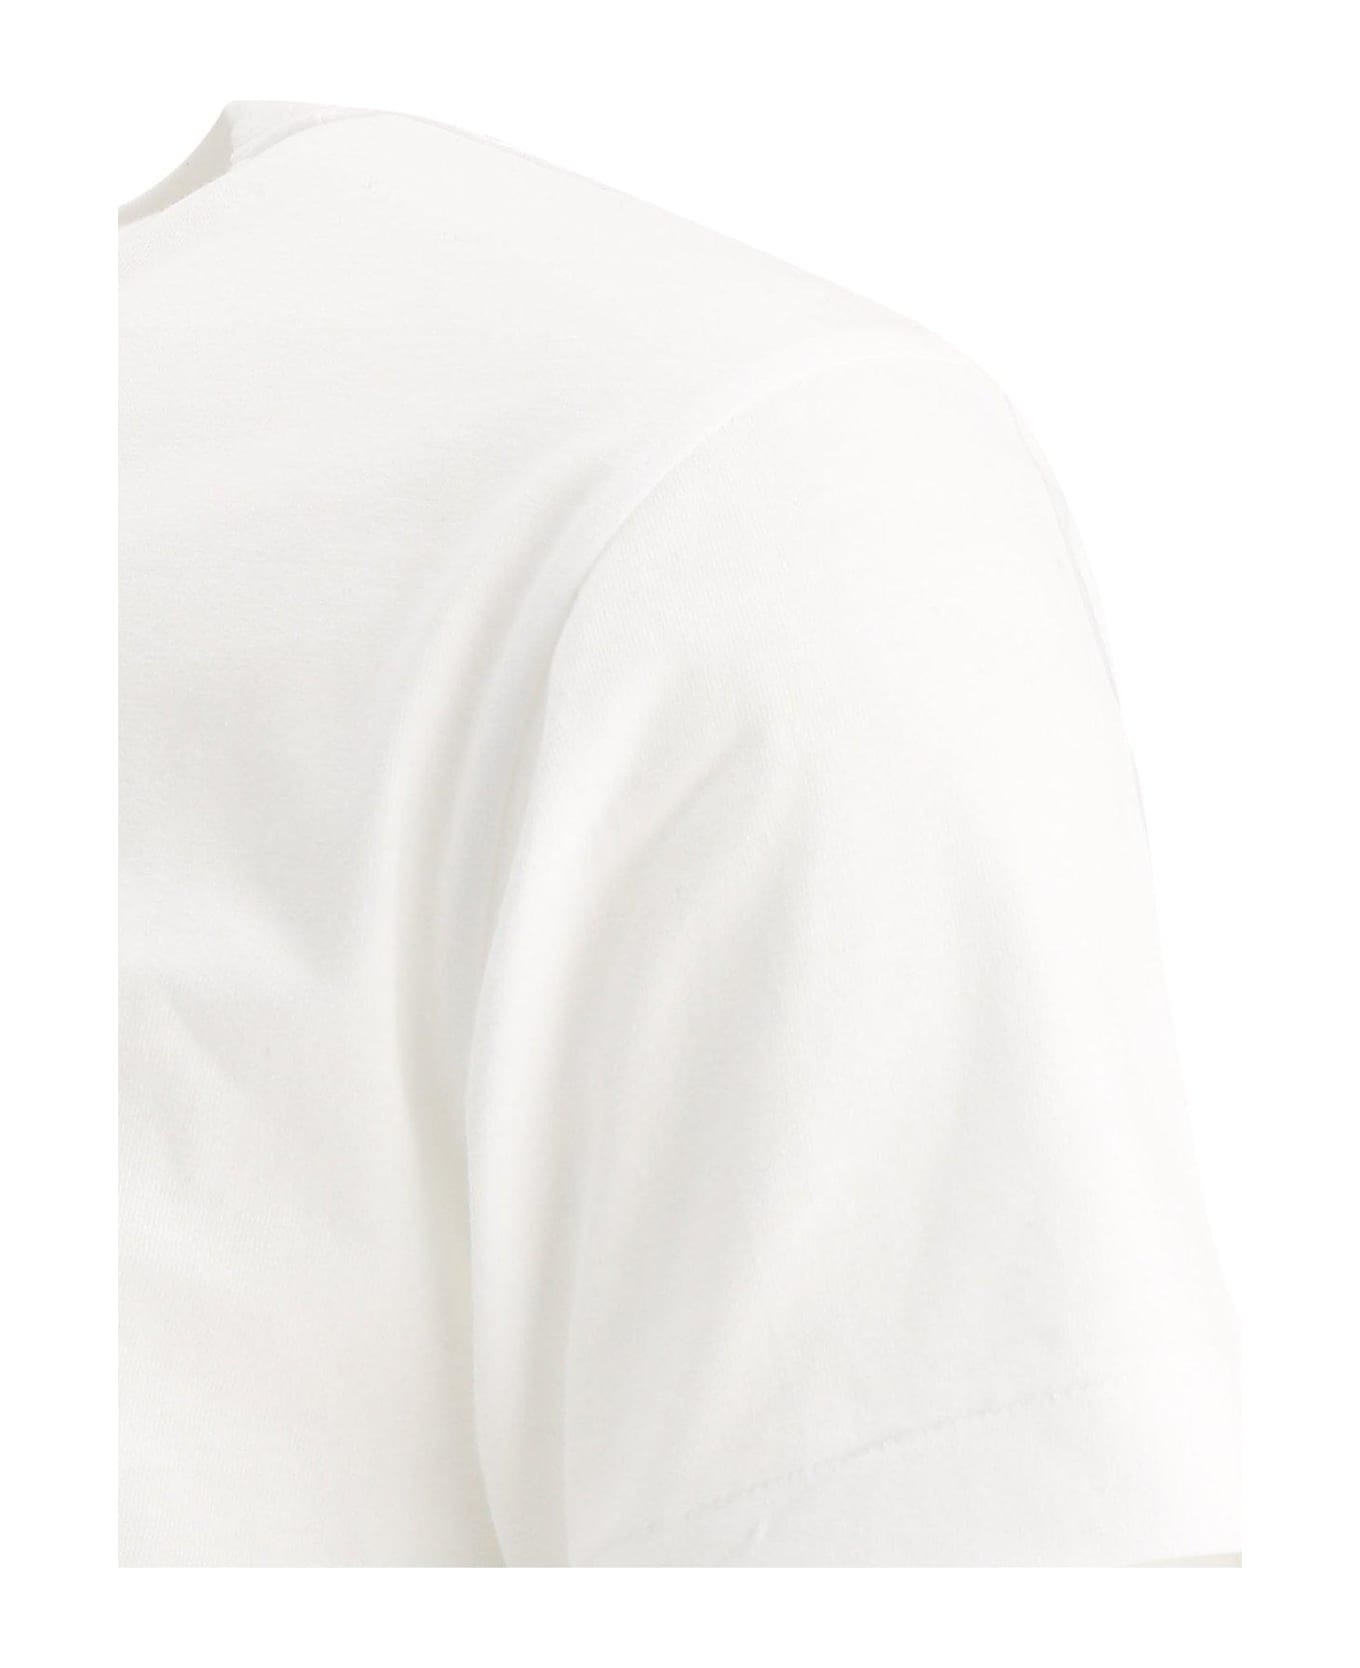 Comme des Garçons Play Heart Logo Patch Crewneck T-shirt - White シャツ